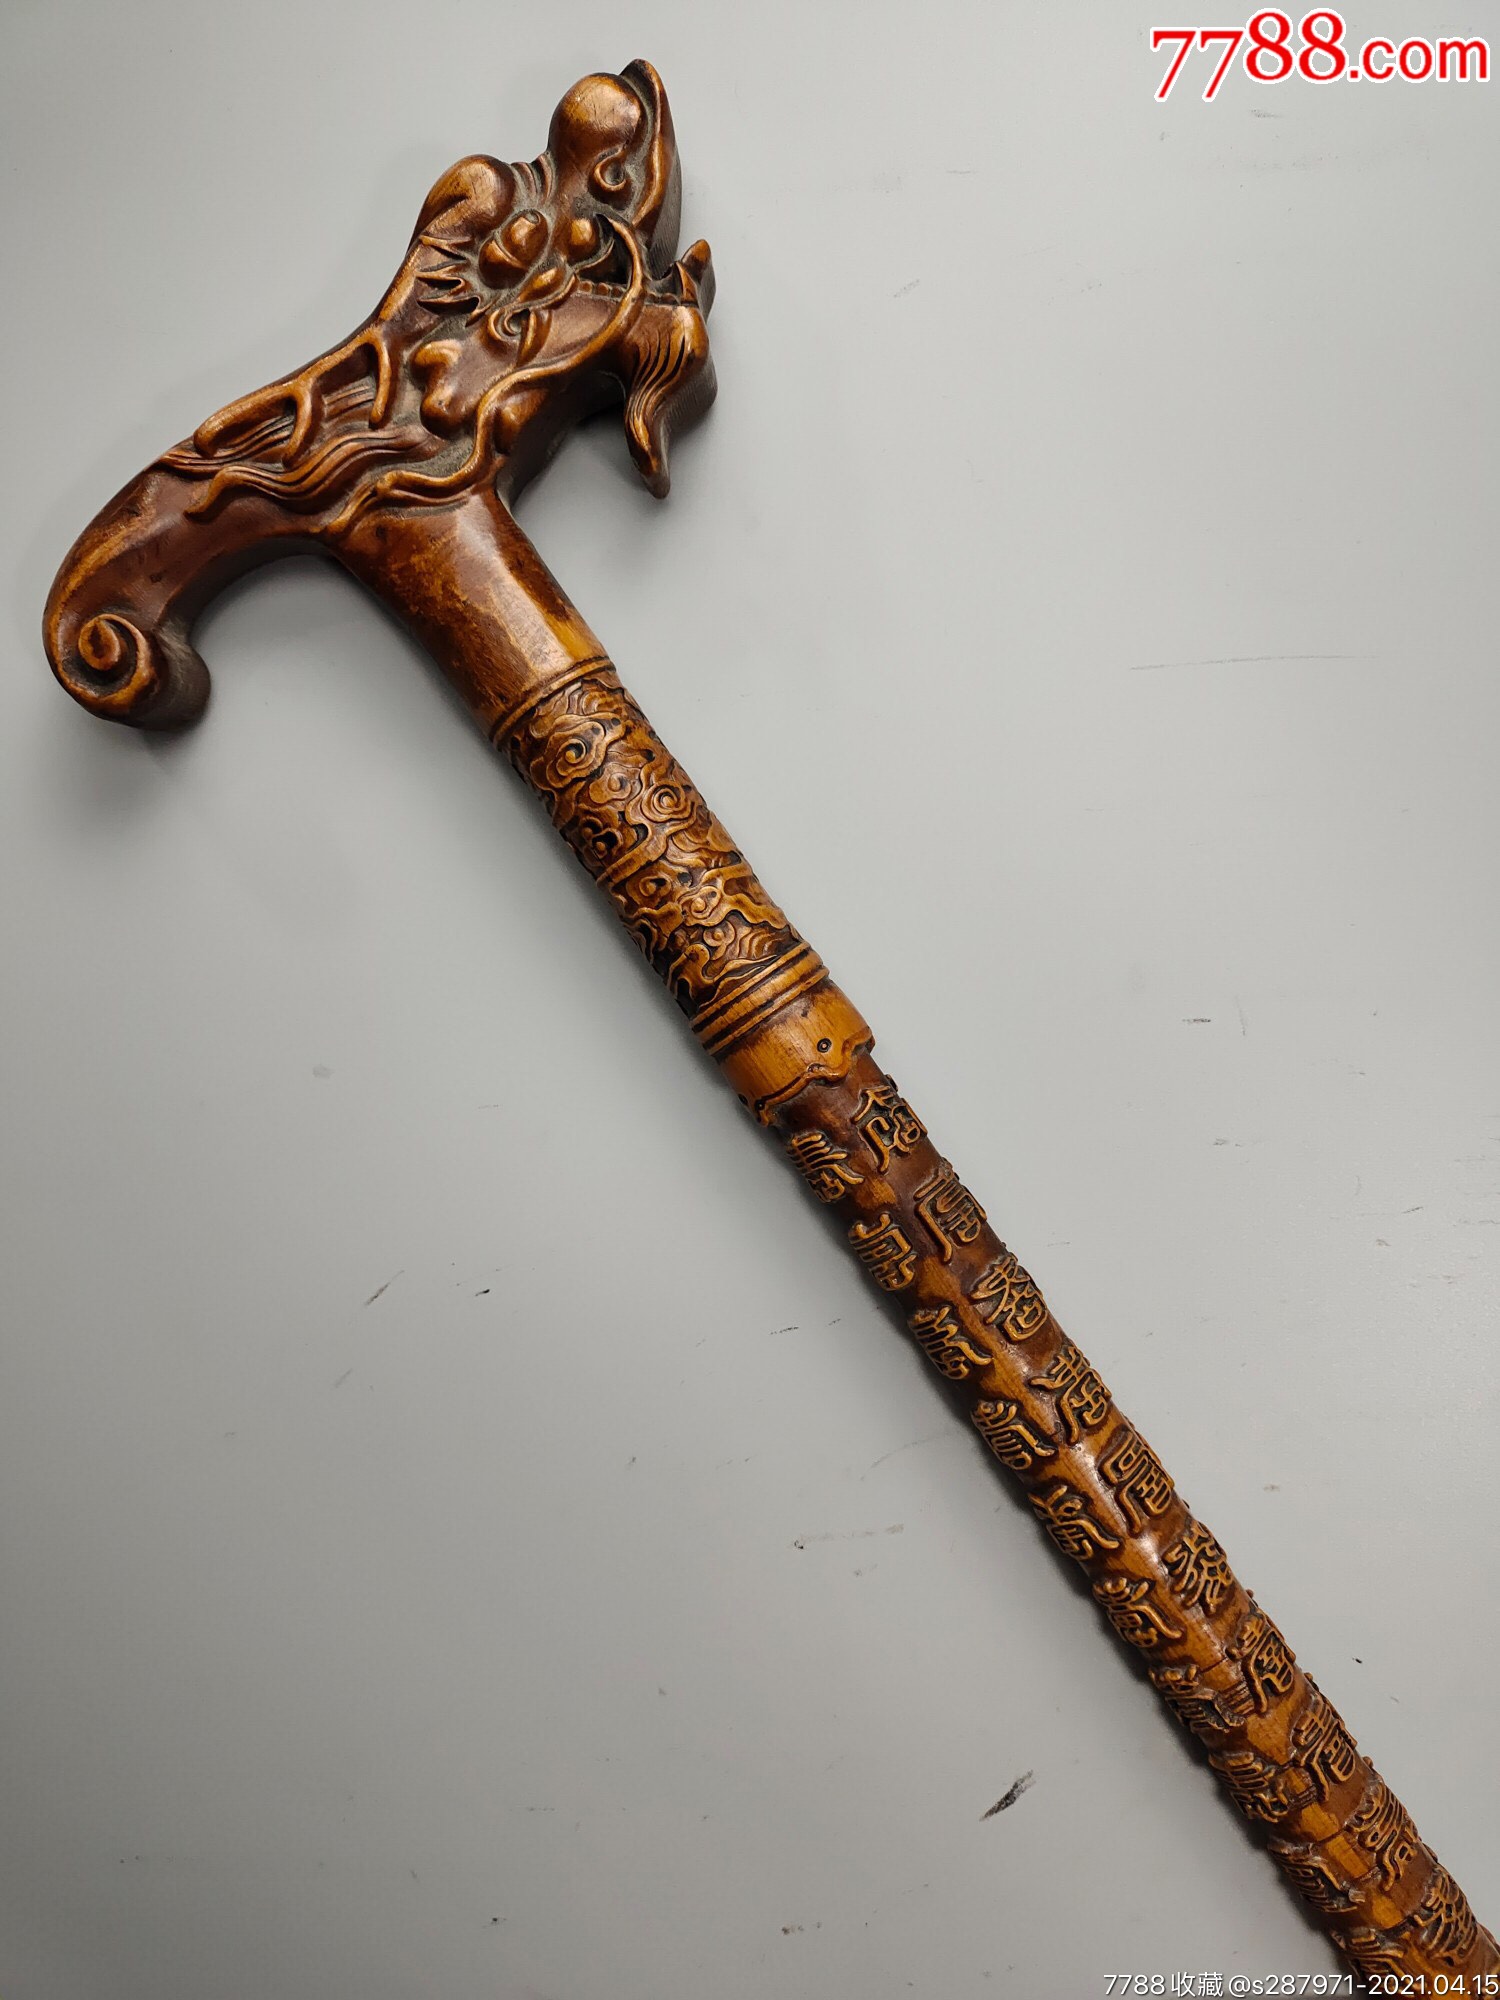 旧藏桃木拐杖老桃木纯手工雕刻'寿'字龙头拐杖直径长88厘米宽18厘米